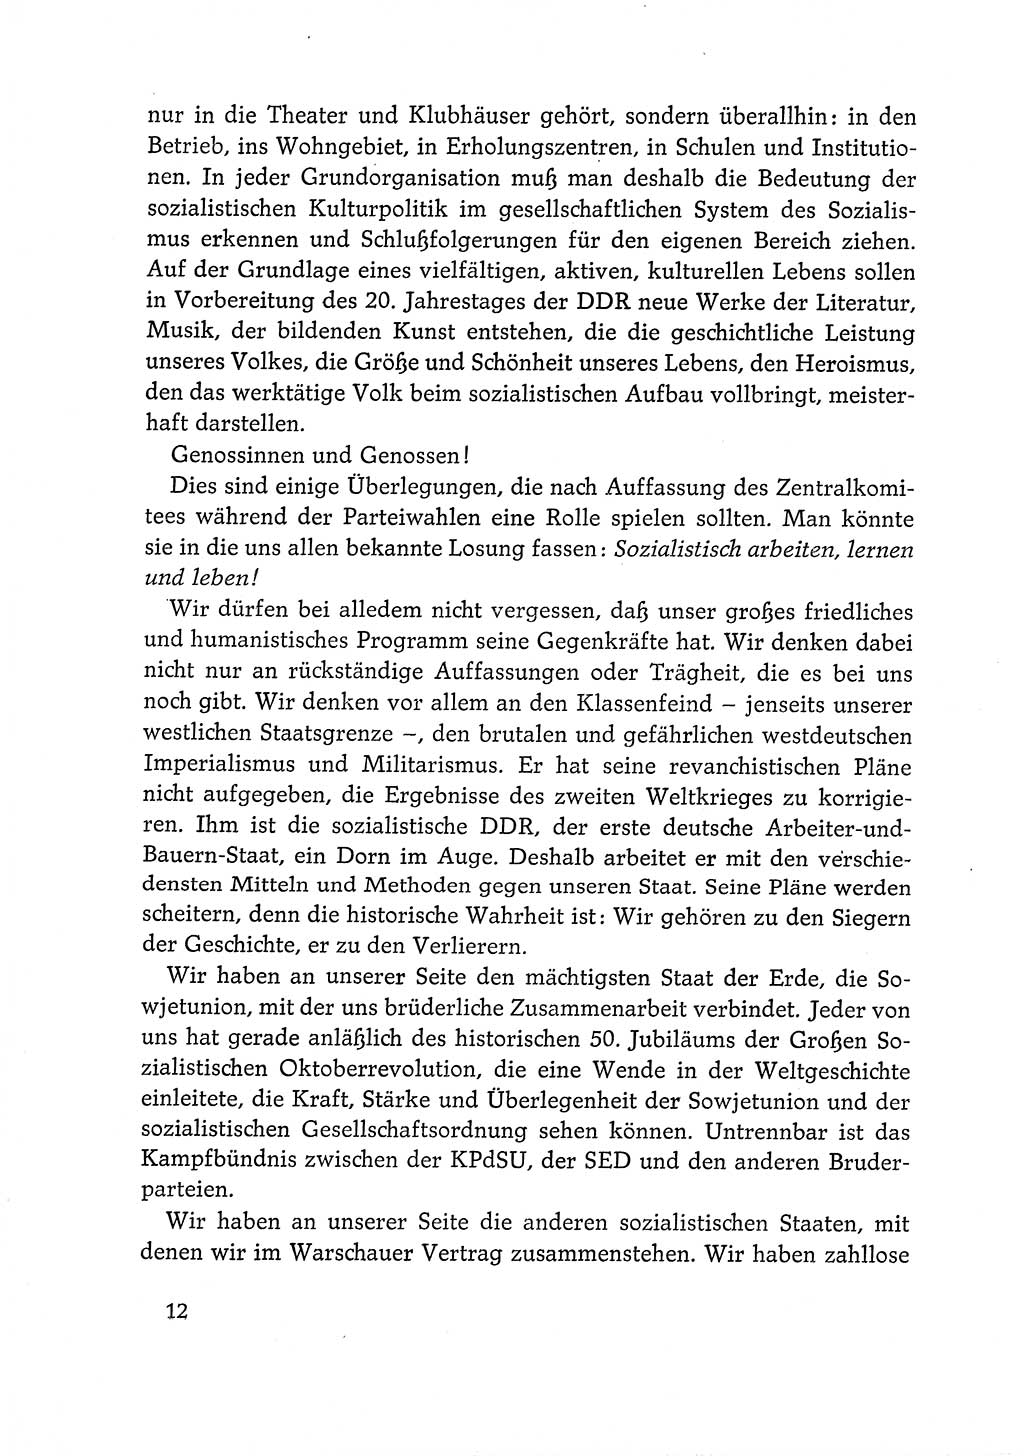 Dokumente der Sozialistischen Einheitspartei Deutschlands (SED) [Deutsche Demokratische Republik (DDR)] 1968-1969, Seite 12 (Dok. SED DDR 1968-1969, S. 12)